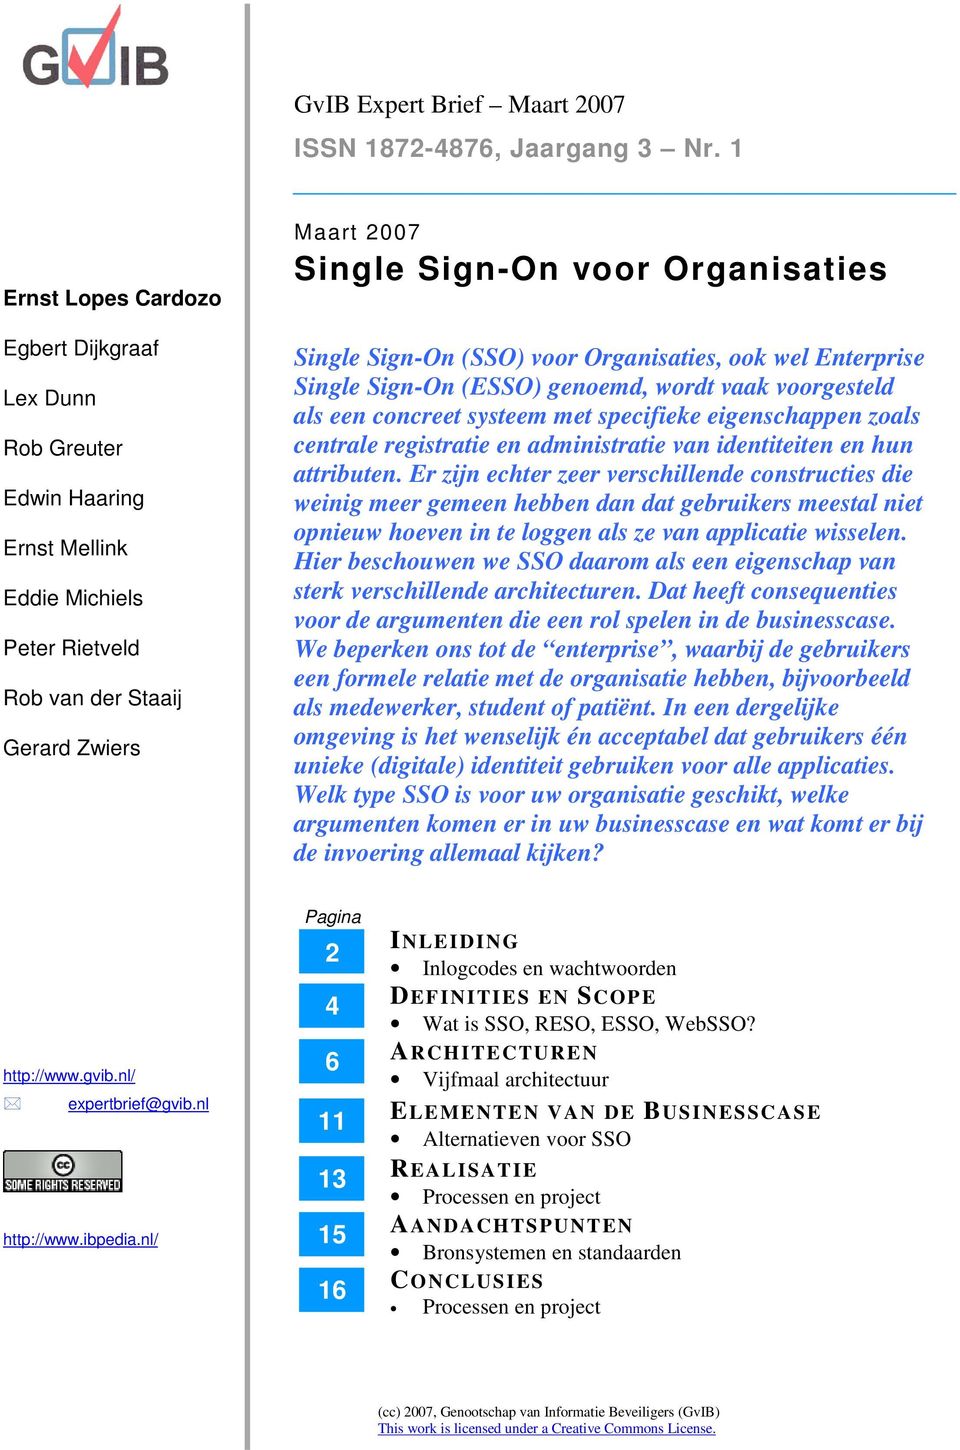 Single Sign-On (SSO) voor Organisaties, ook wel Enterprise Single Sign-On (ESSO) genoemd, wordt vaak voorgesteld als een concreet systeem met specifieke eigenschappen zoals centrale registratie en